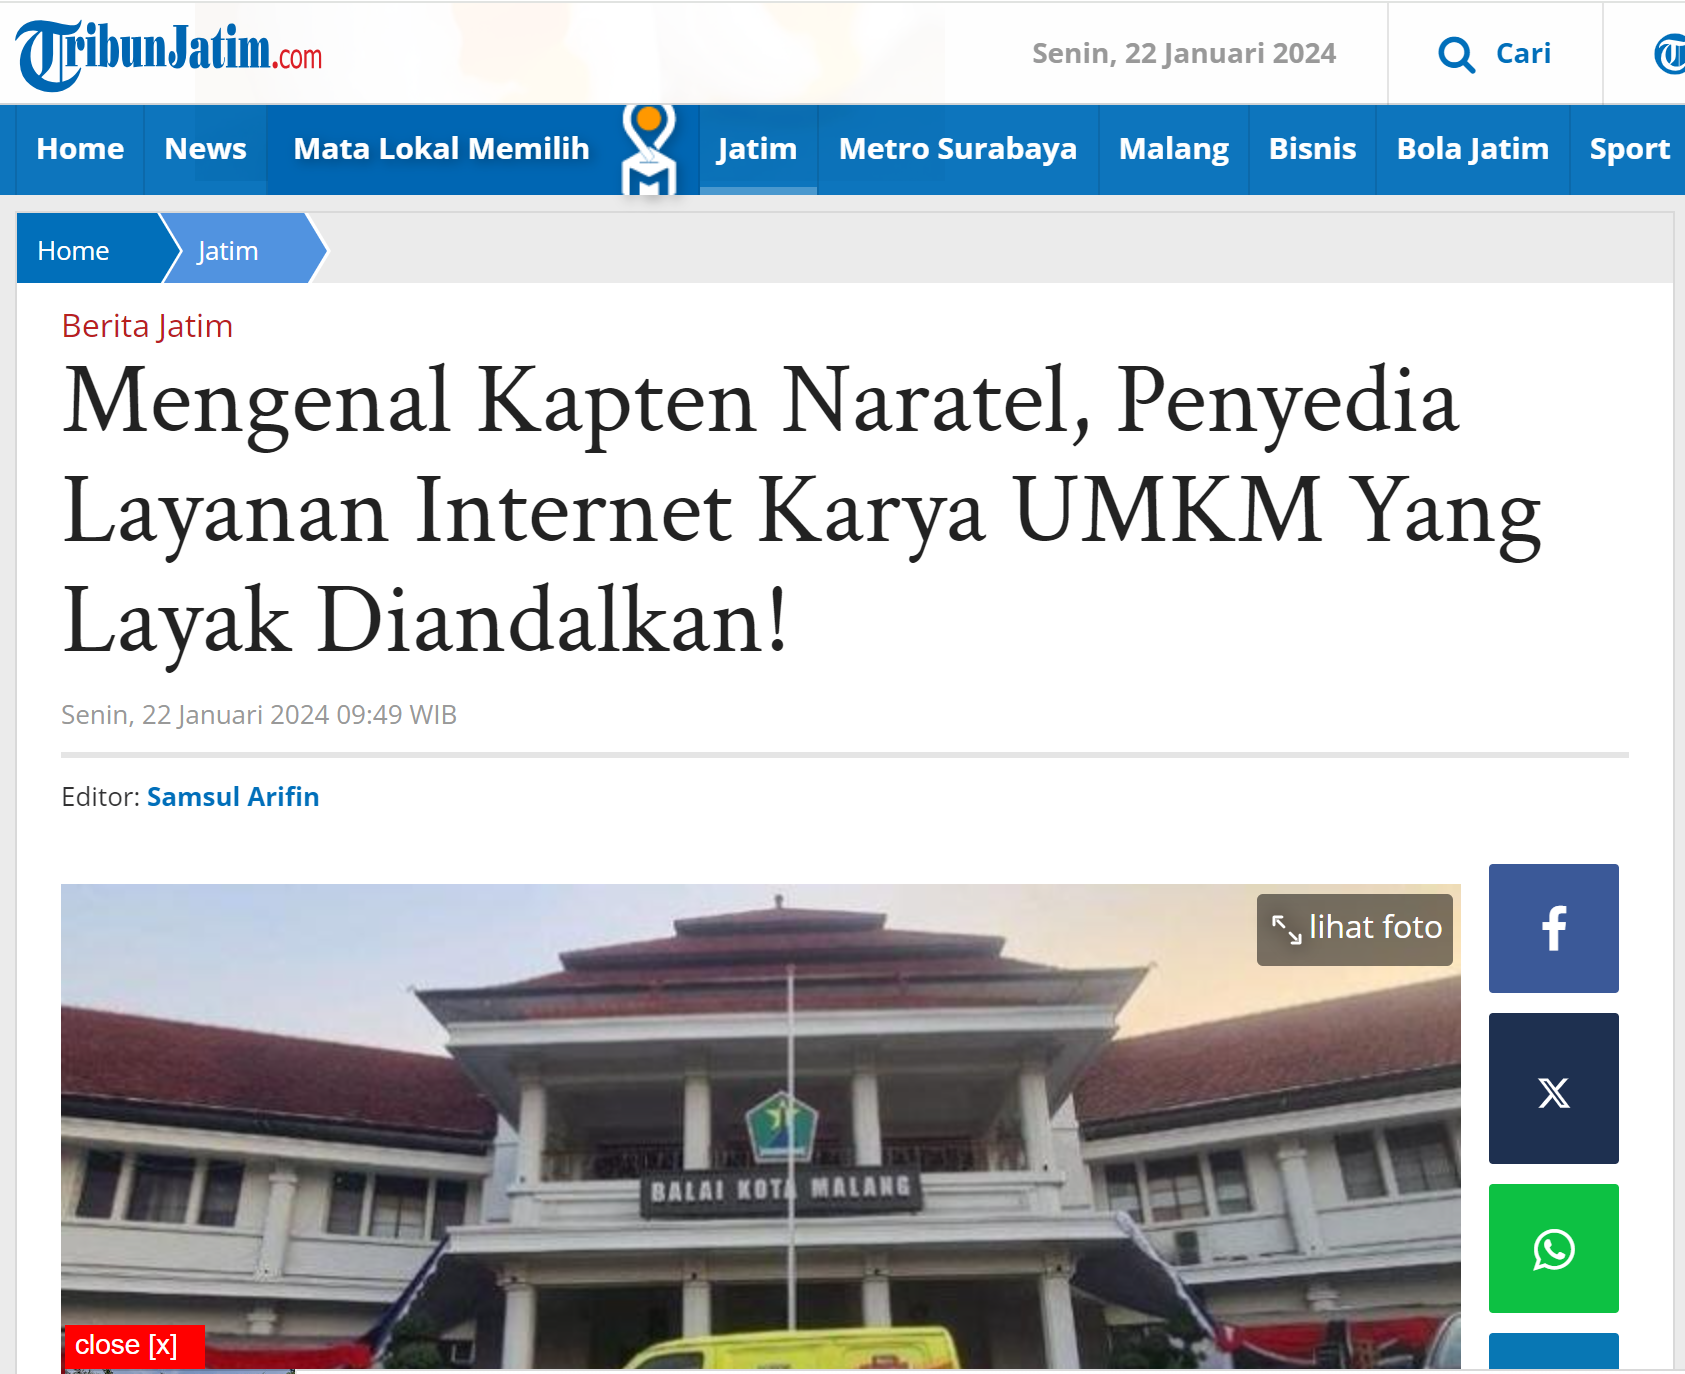 Mengenal Kapten Naratel, Penyedia Layanan Internet Karya UMKM Yang Layak Diandalkan!